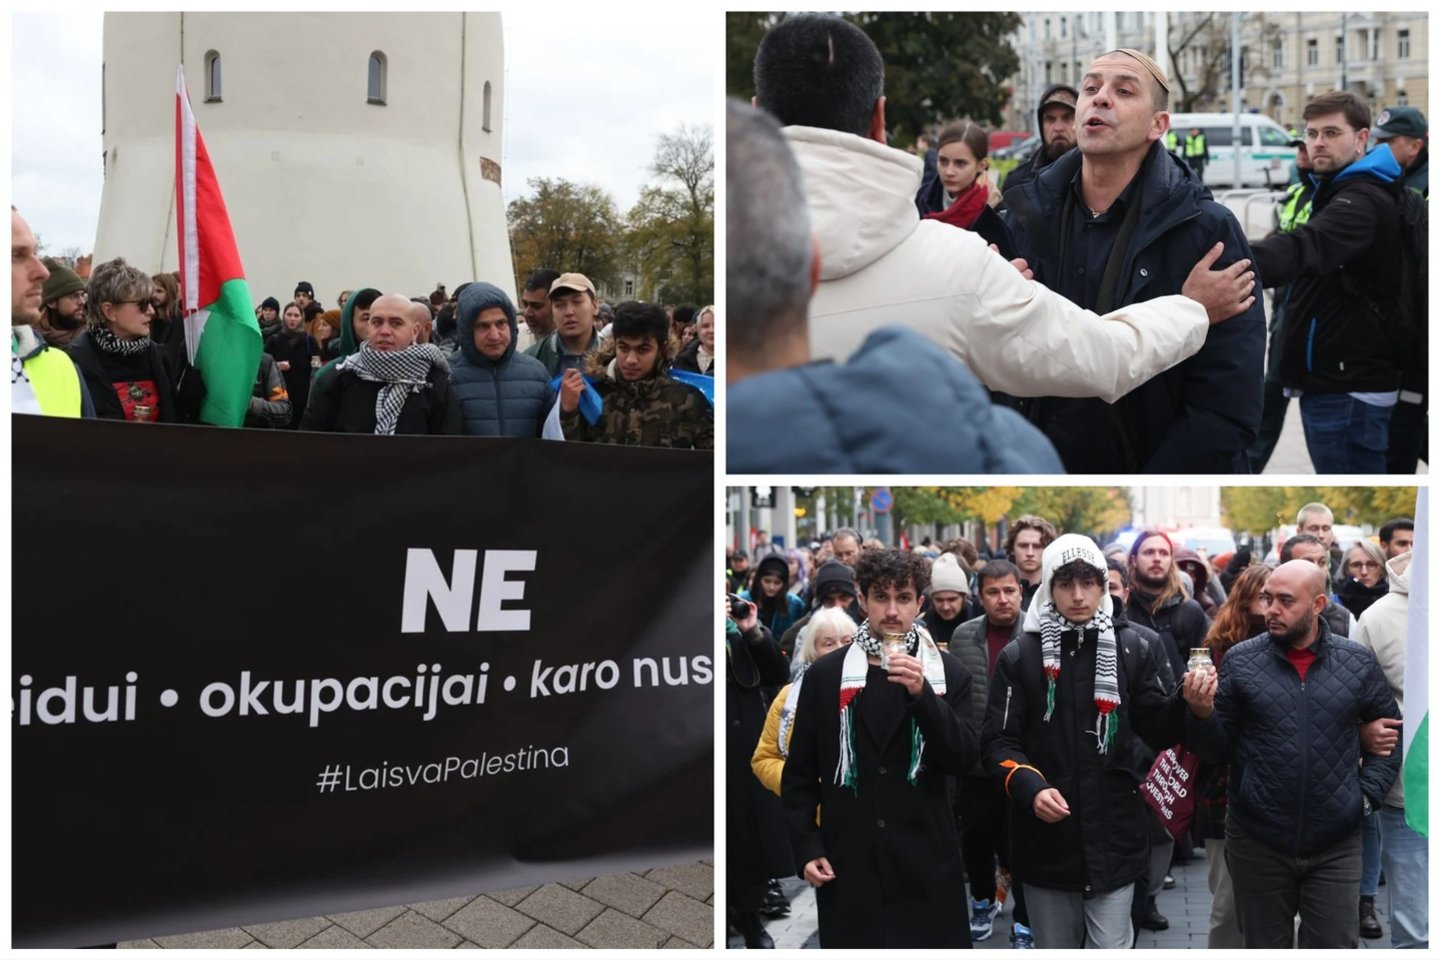 Vilniuje ketvirtadienį kelios dešimtys žmonių susirinko į eiseną, skirtą išreikšti solidarumą su Palestinos žmonėmis.